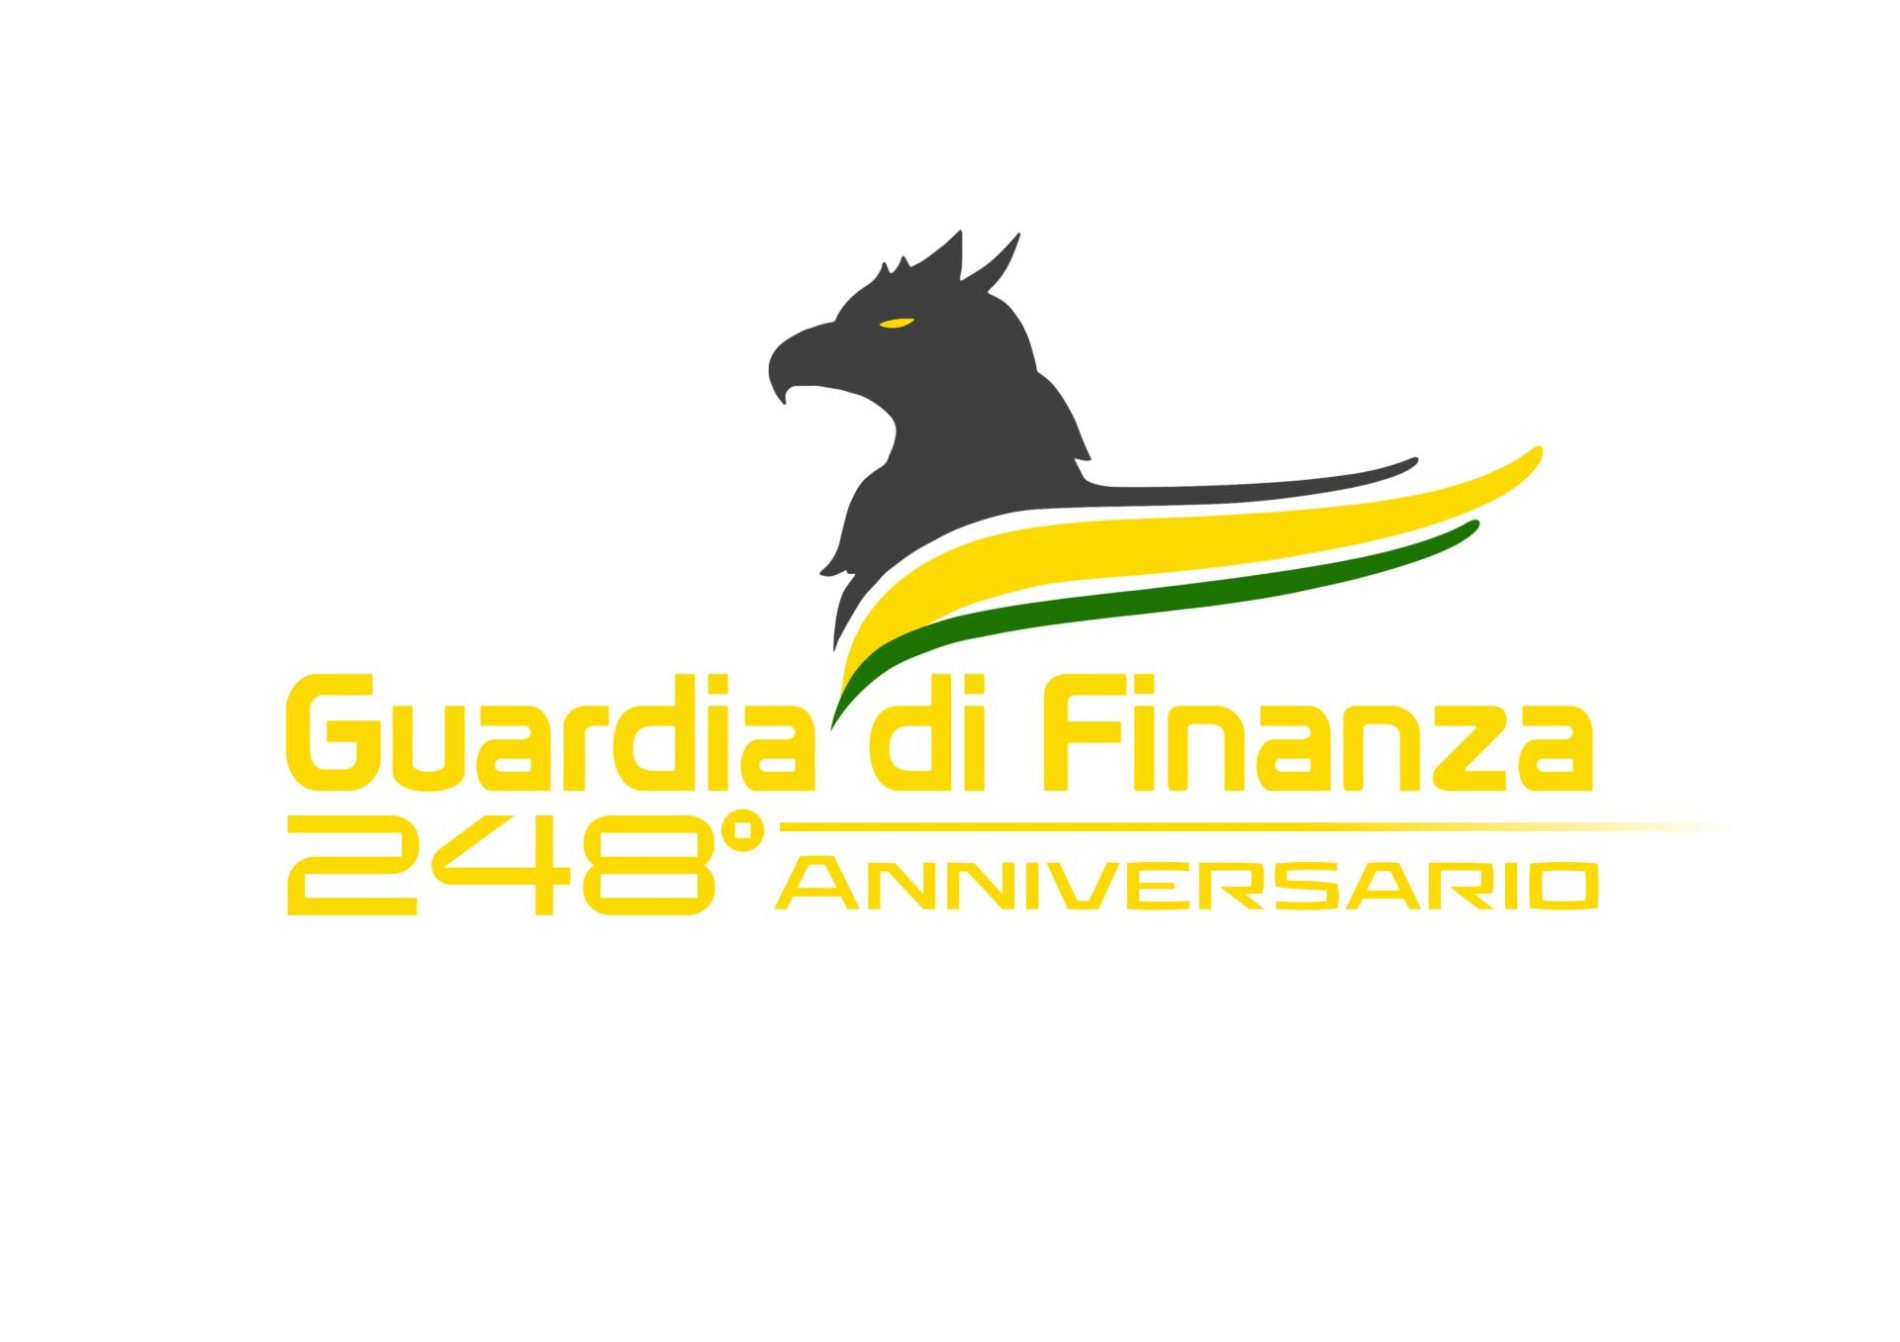 248° Anniversario della fondazione della Guardia di Finanza. Bilancio operativo dal 1° gennaio 2021 al 31 maggio 2022. Impegno “a tutto campo” contro la criminalità a tutela di cittadini e imprese.